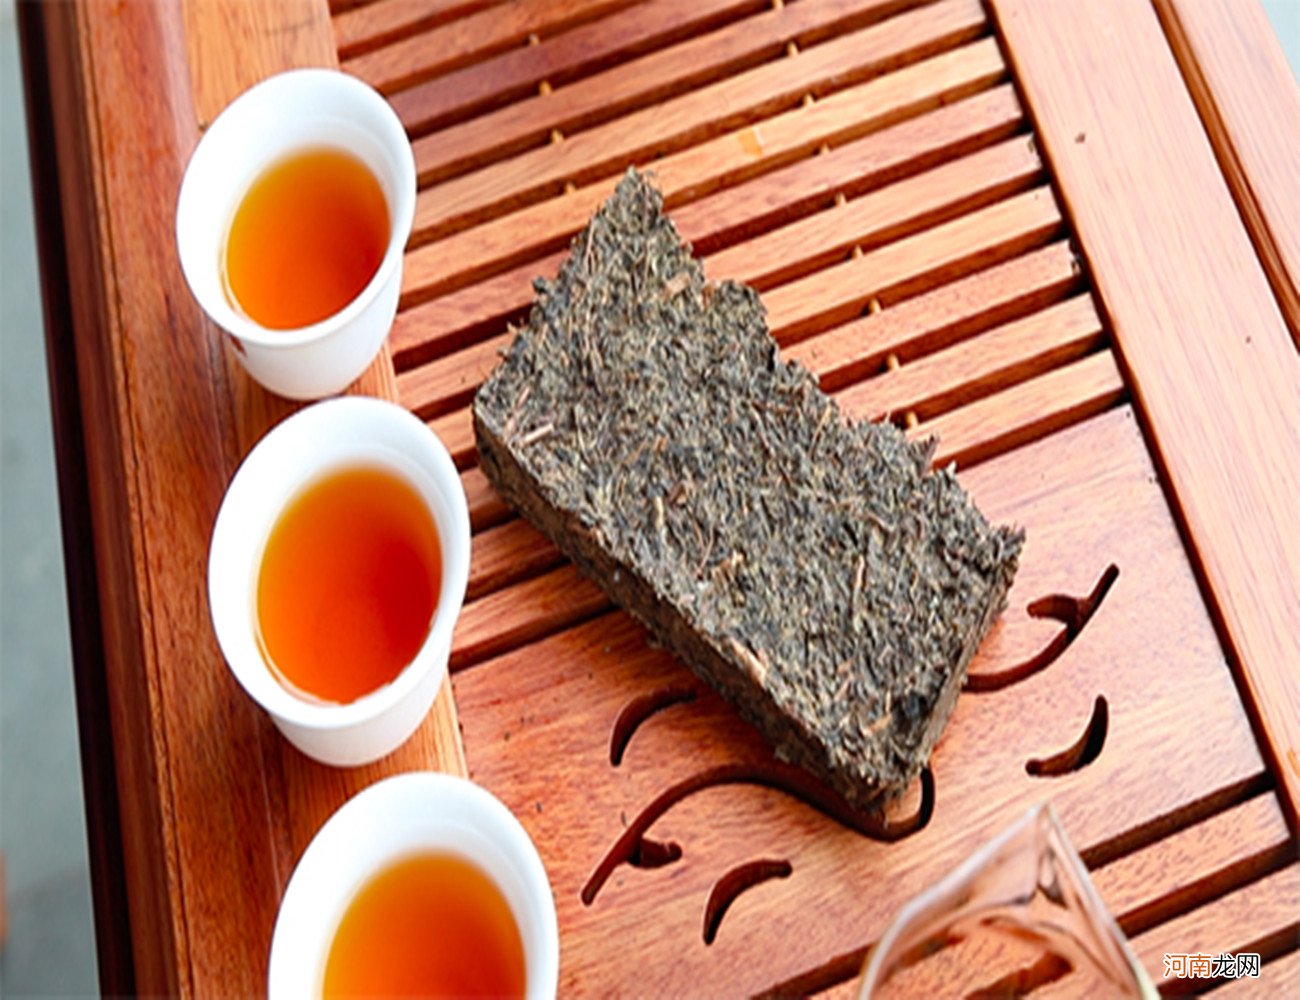 安化黑茶茯砖茶功效